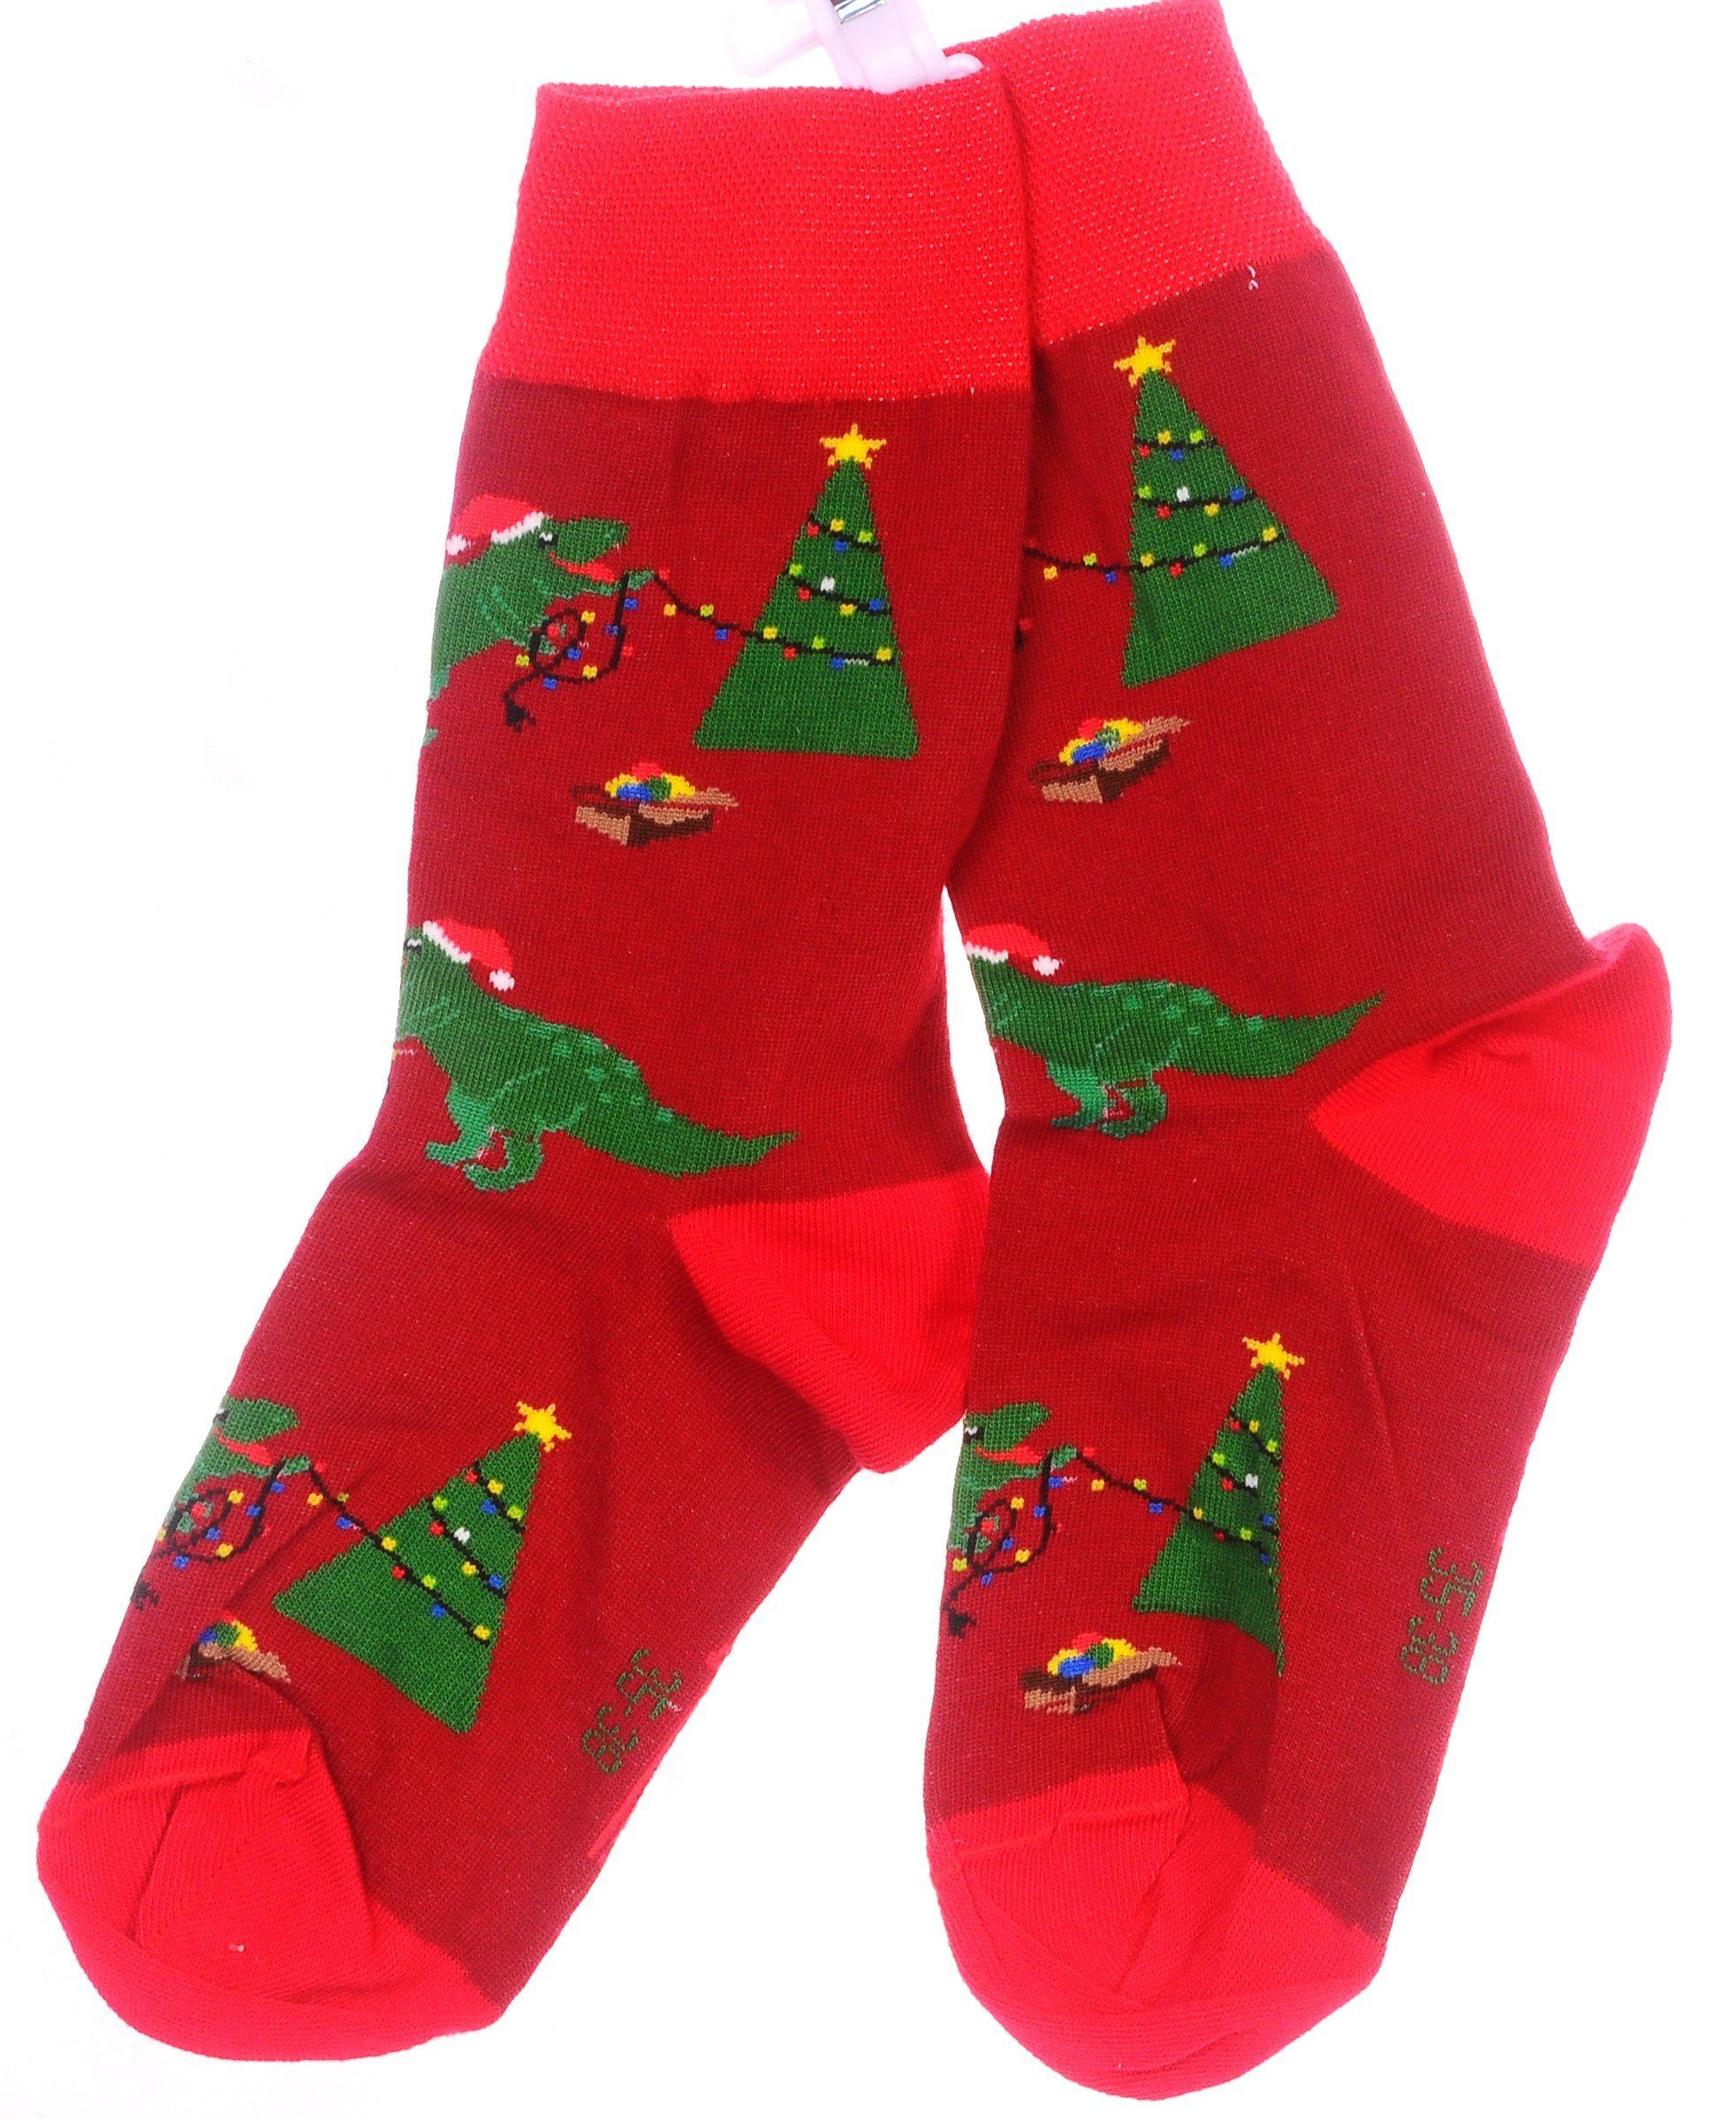 Weihnachtssocken Tannenbaum 1 27 mit 39 46 Martinex Paar Strümpfe 42 31 43 Muster 35 Socken und Socken 38 Drachen